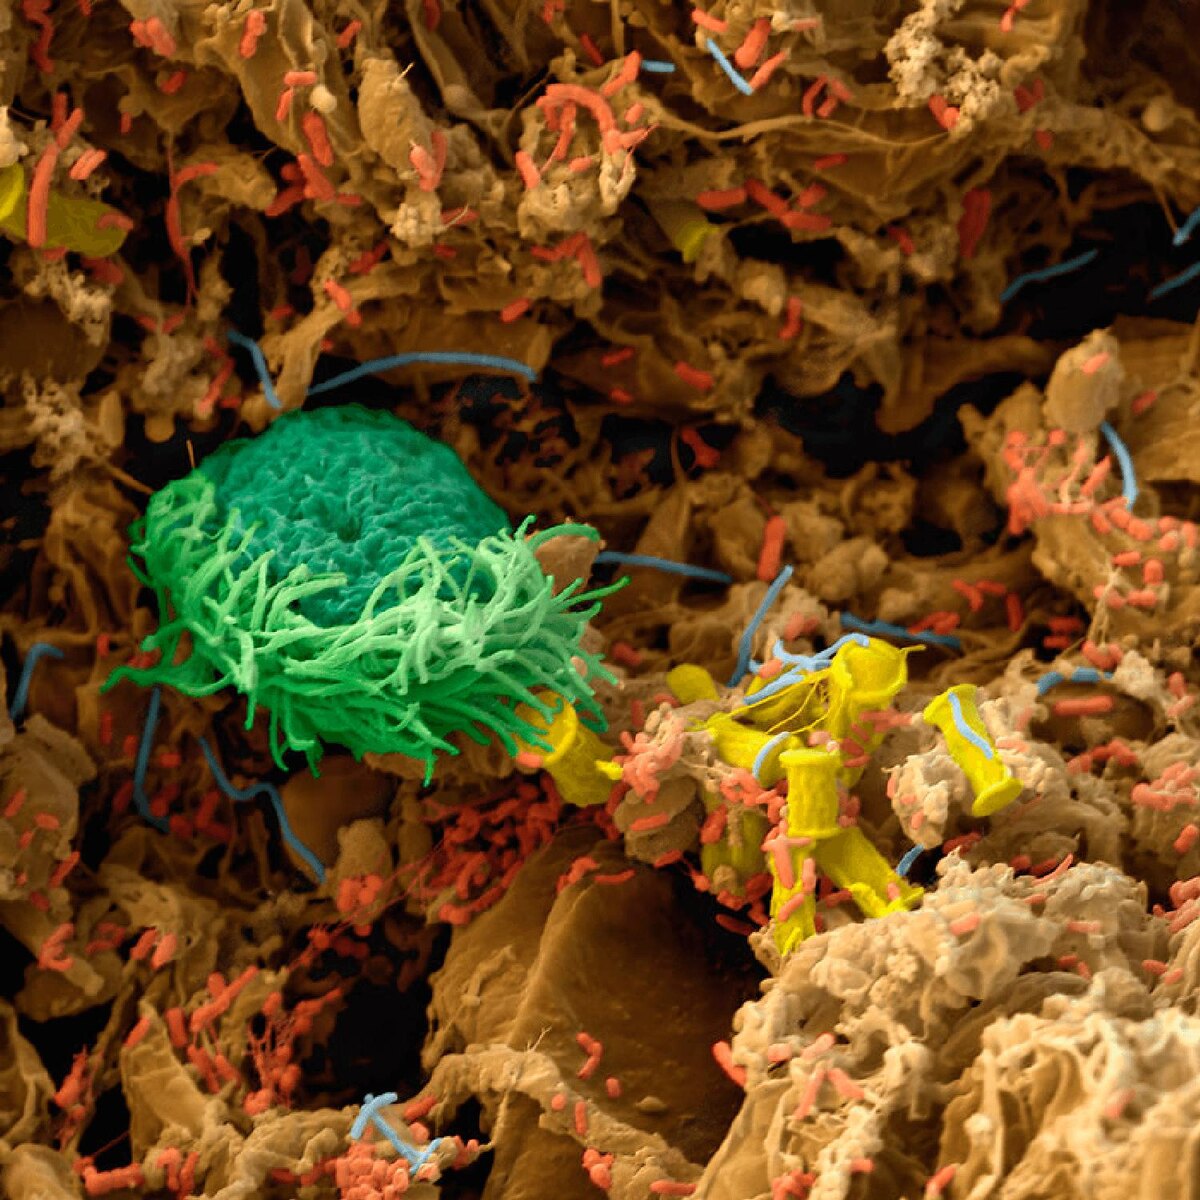 Инфузория (зелёная) и бактерии (красный цвет), а также червь нематода (2 фото) внутри компостной кучи. Электронный микроскоп.